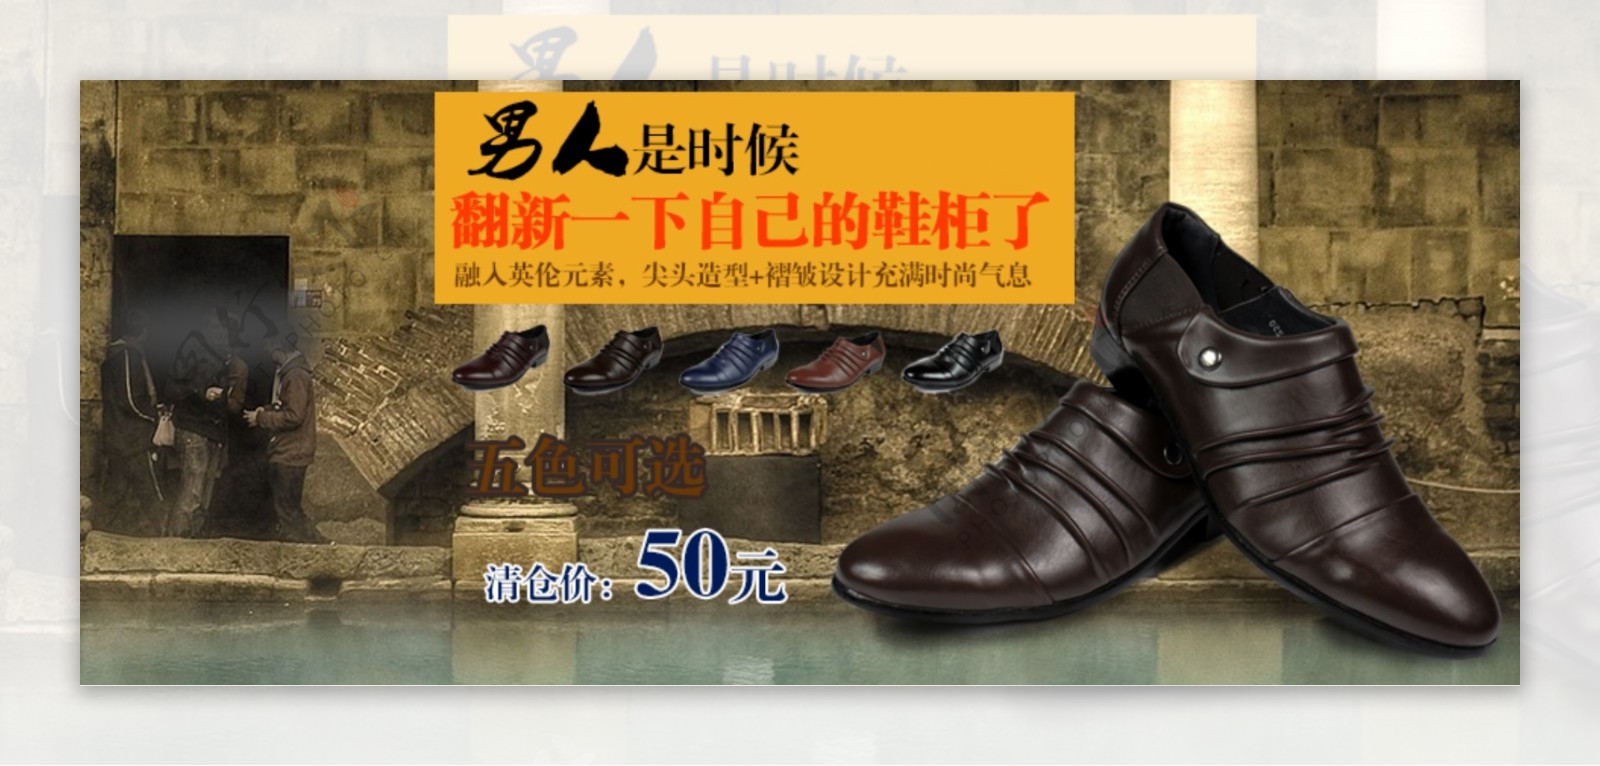 男款皮鞋广告图